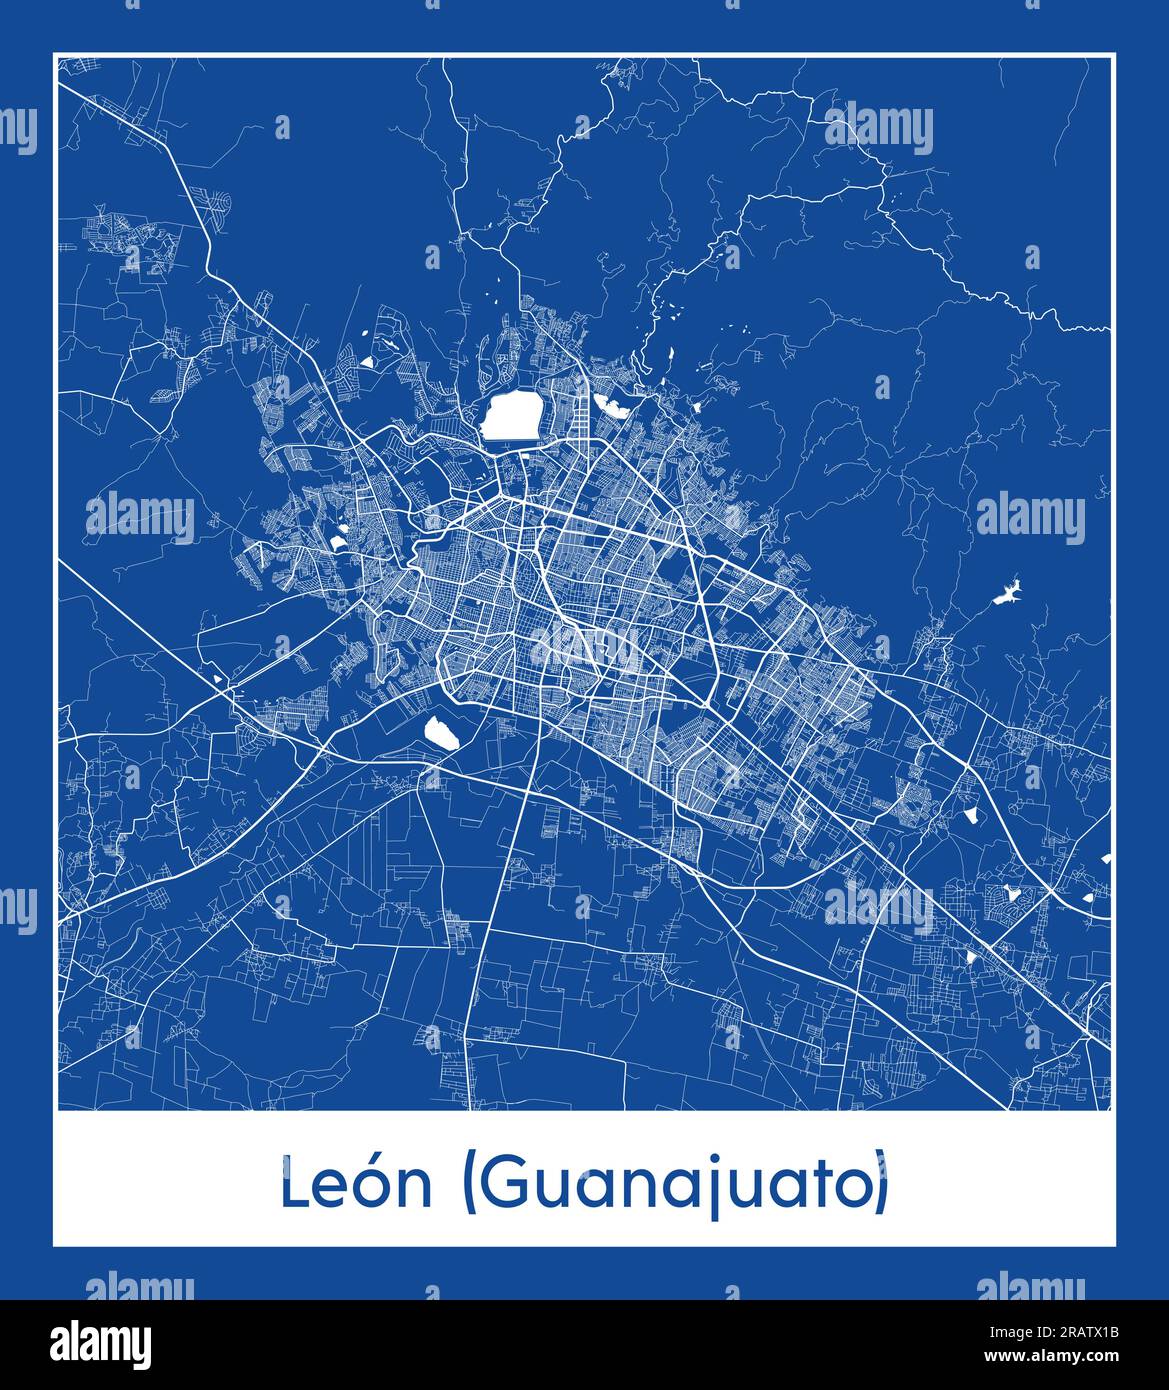 Leon Guanajuato Mexico North America City Map Blue Print Vector Illustration Stock Vector Image